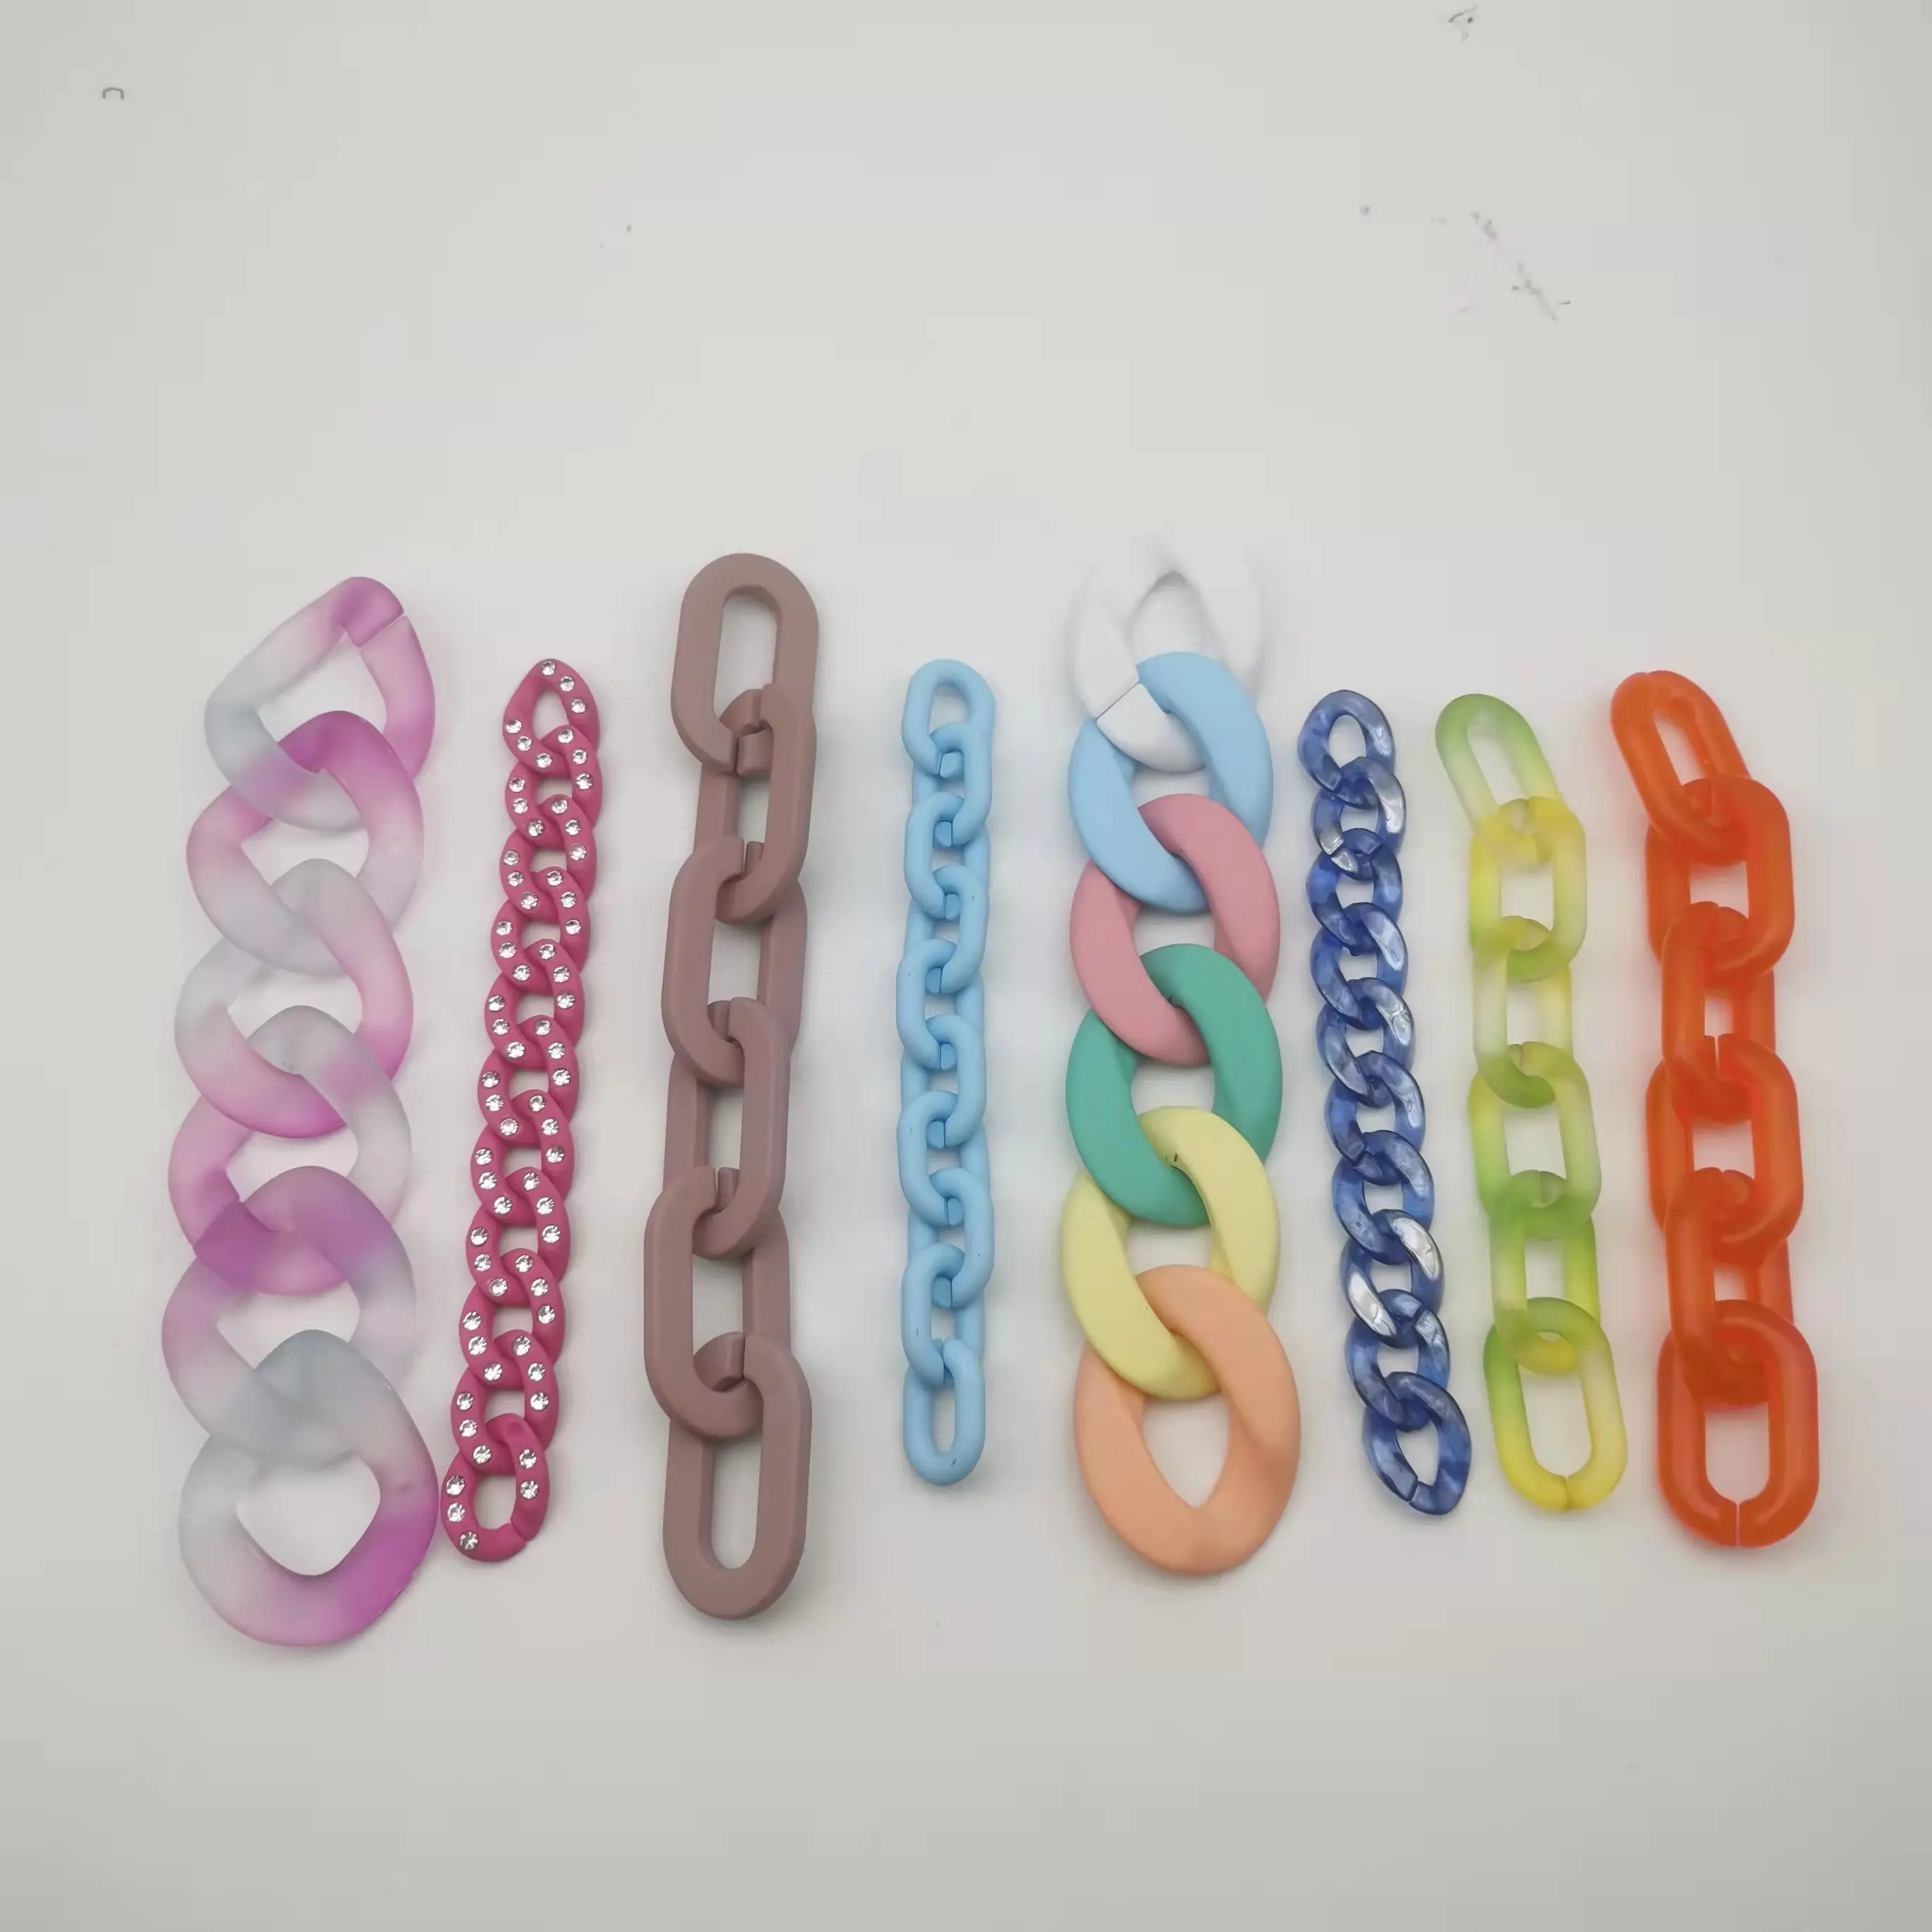 سلسلة من الأكريليك البلاستيكي بألوان الحلوى للبيع بالجملة متوفرة لحزام الحقائب والقلادات